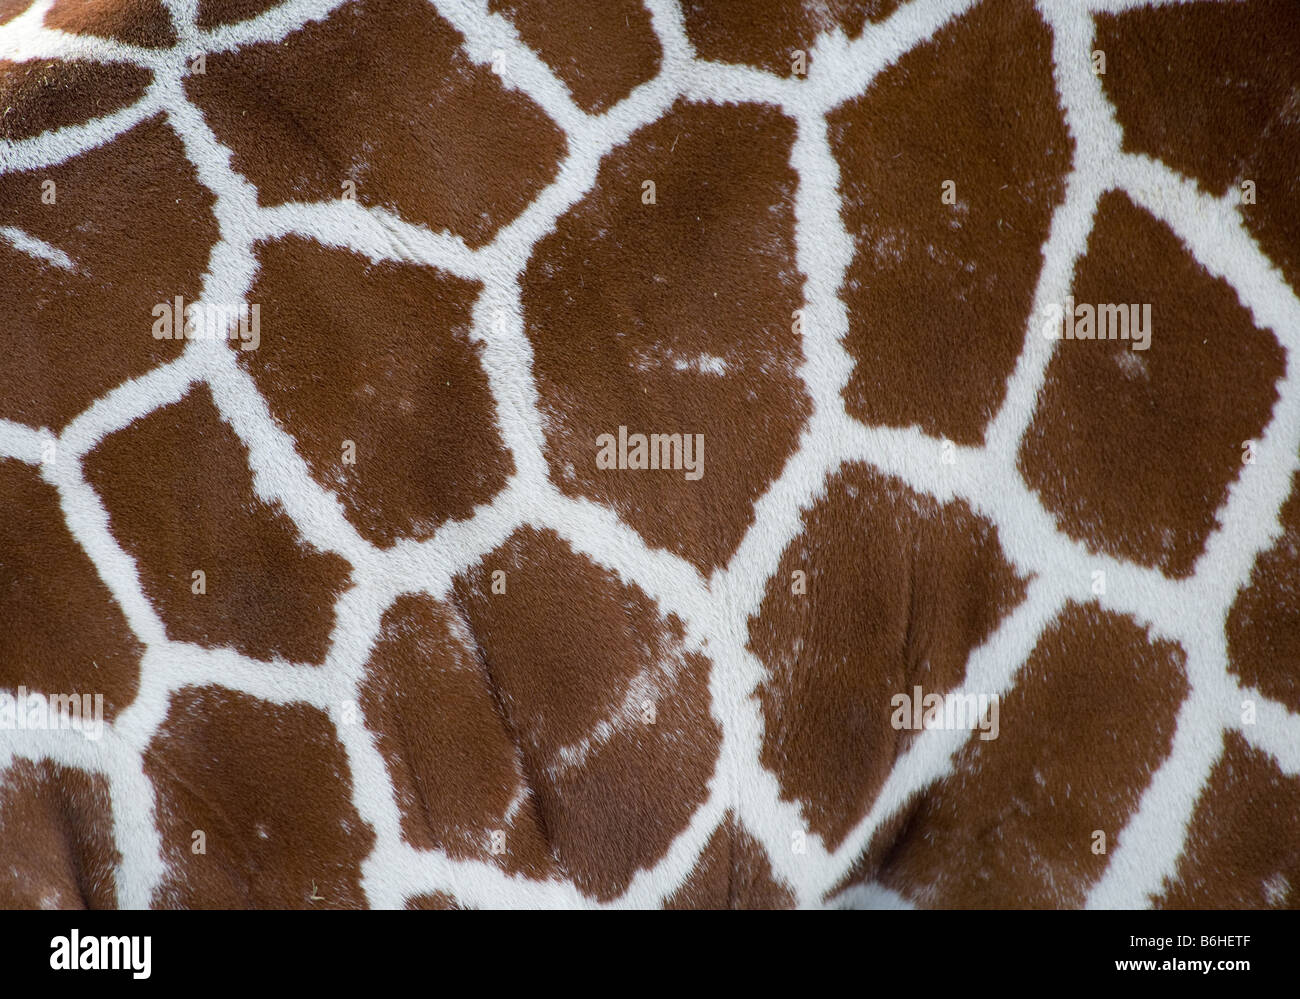 A photo of a giraffe texture Stock Photo